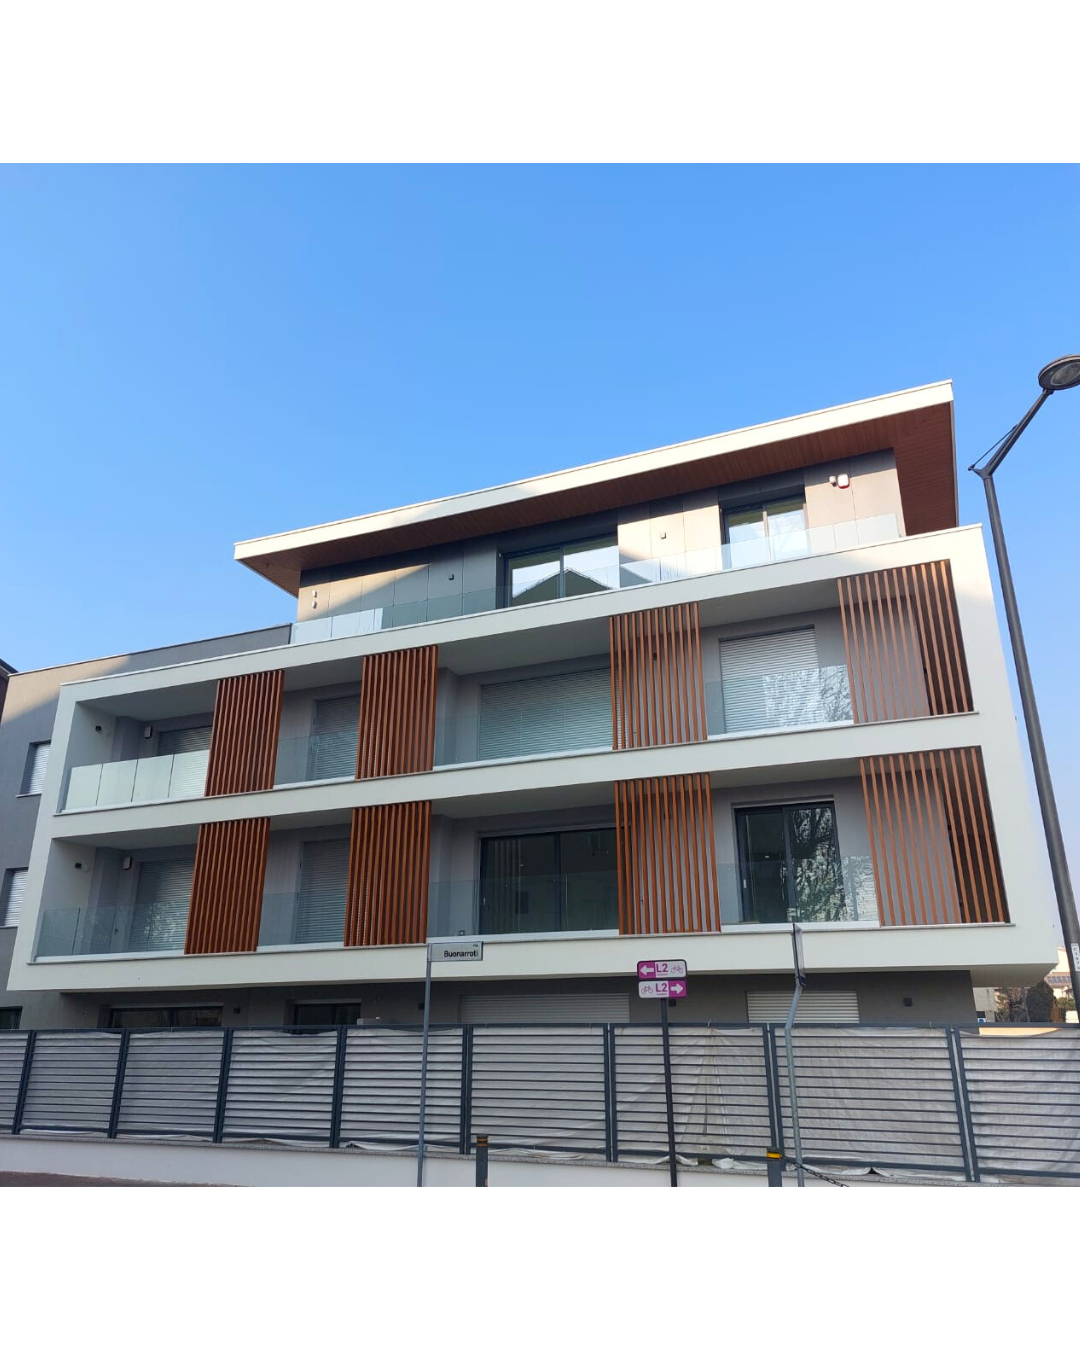 EXTRALUSSO model windows for a residential complex in Cernusco sul Naviglio